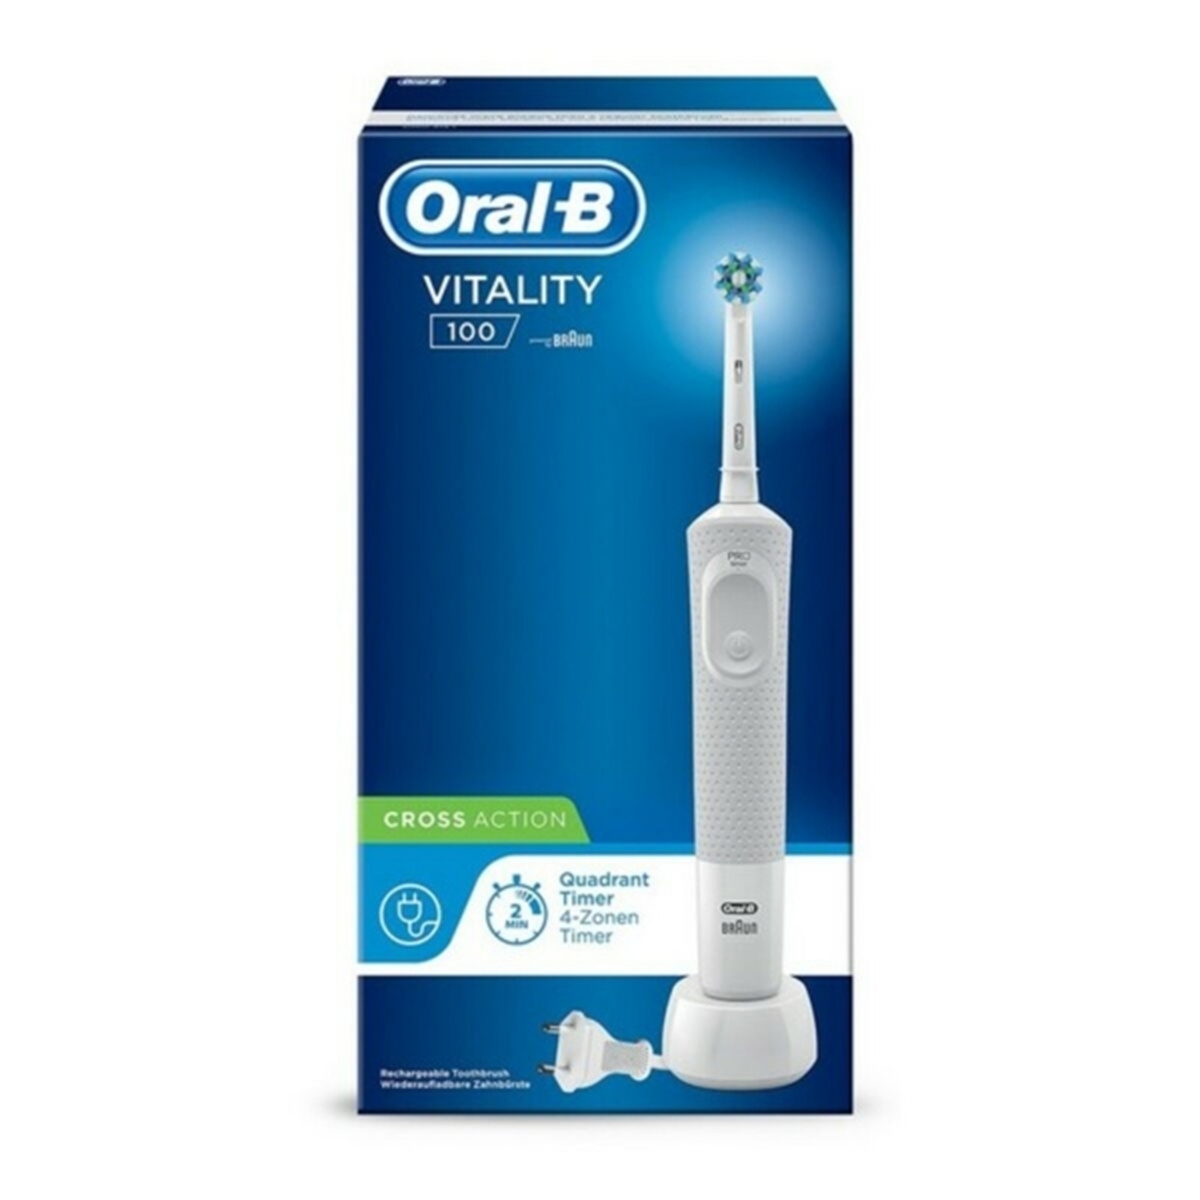 DOTMALL S7817762 Elektrische Zahnbürste weiße